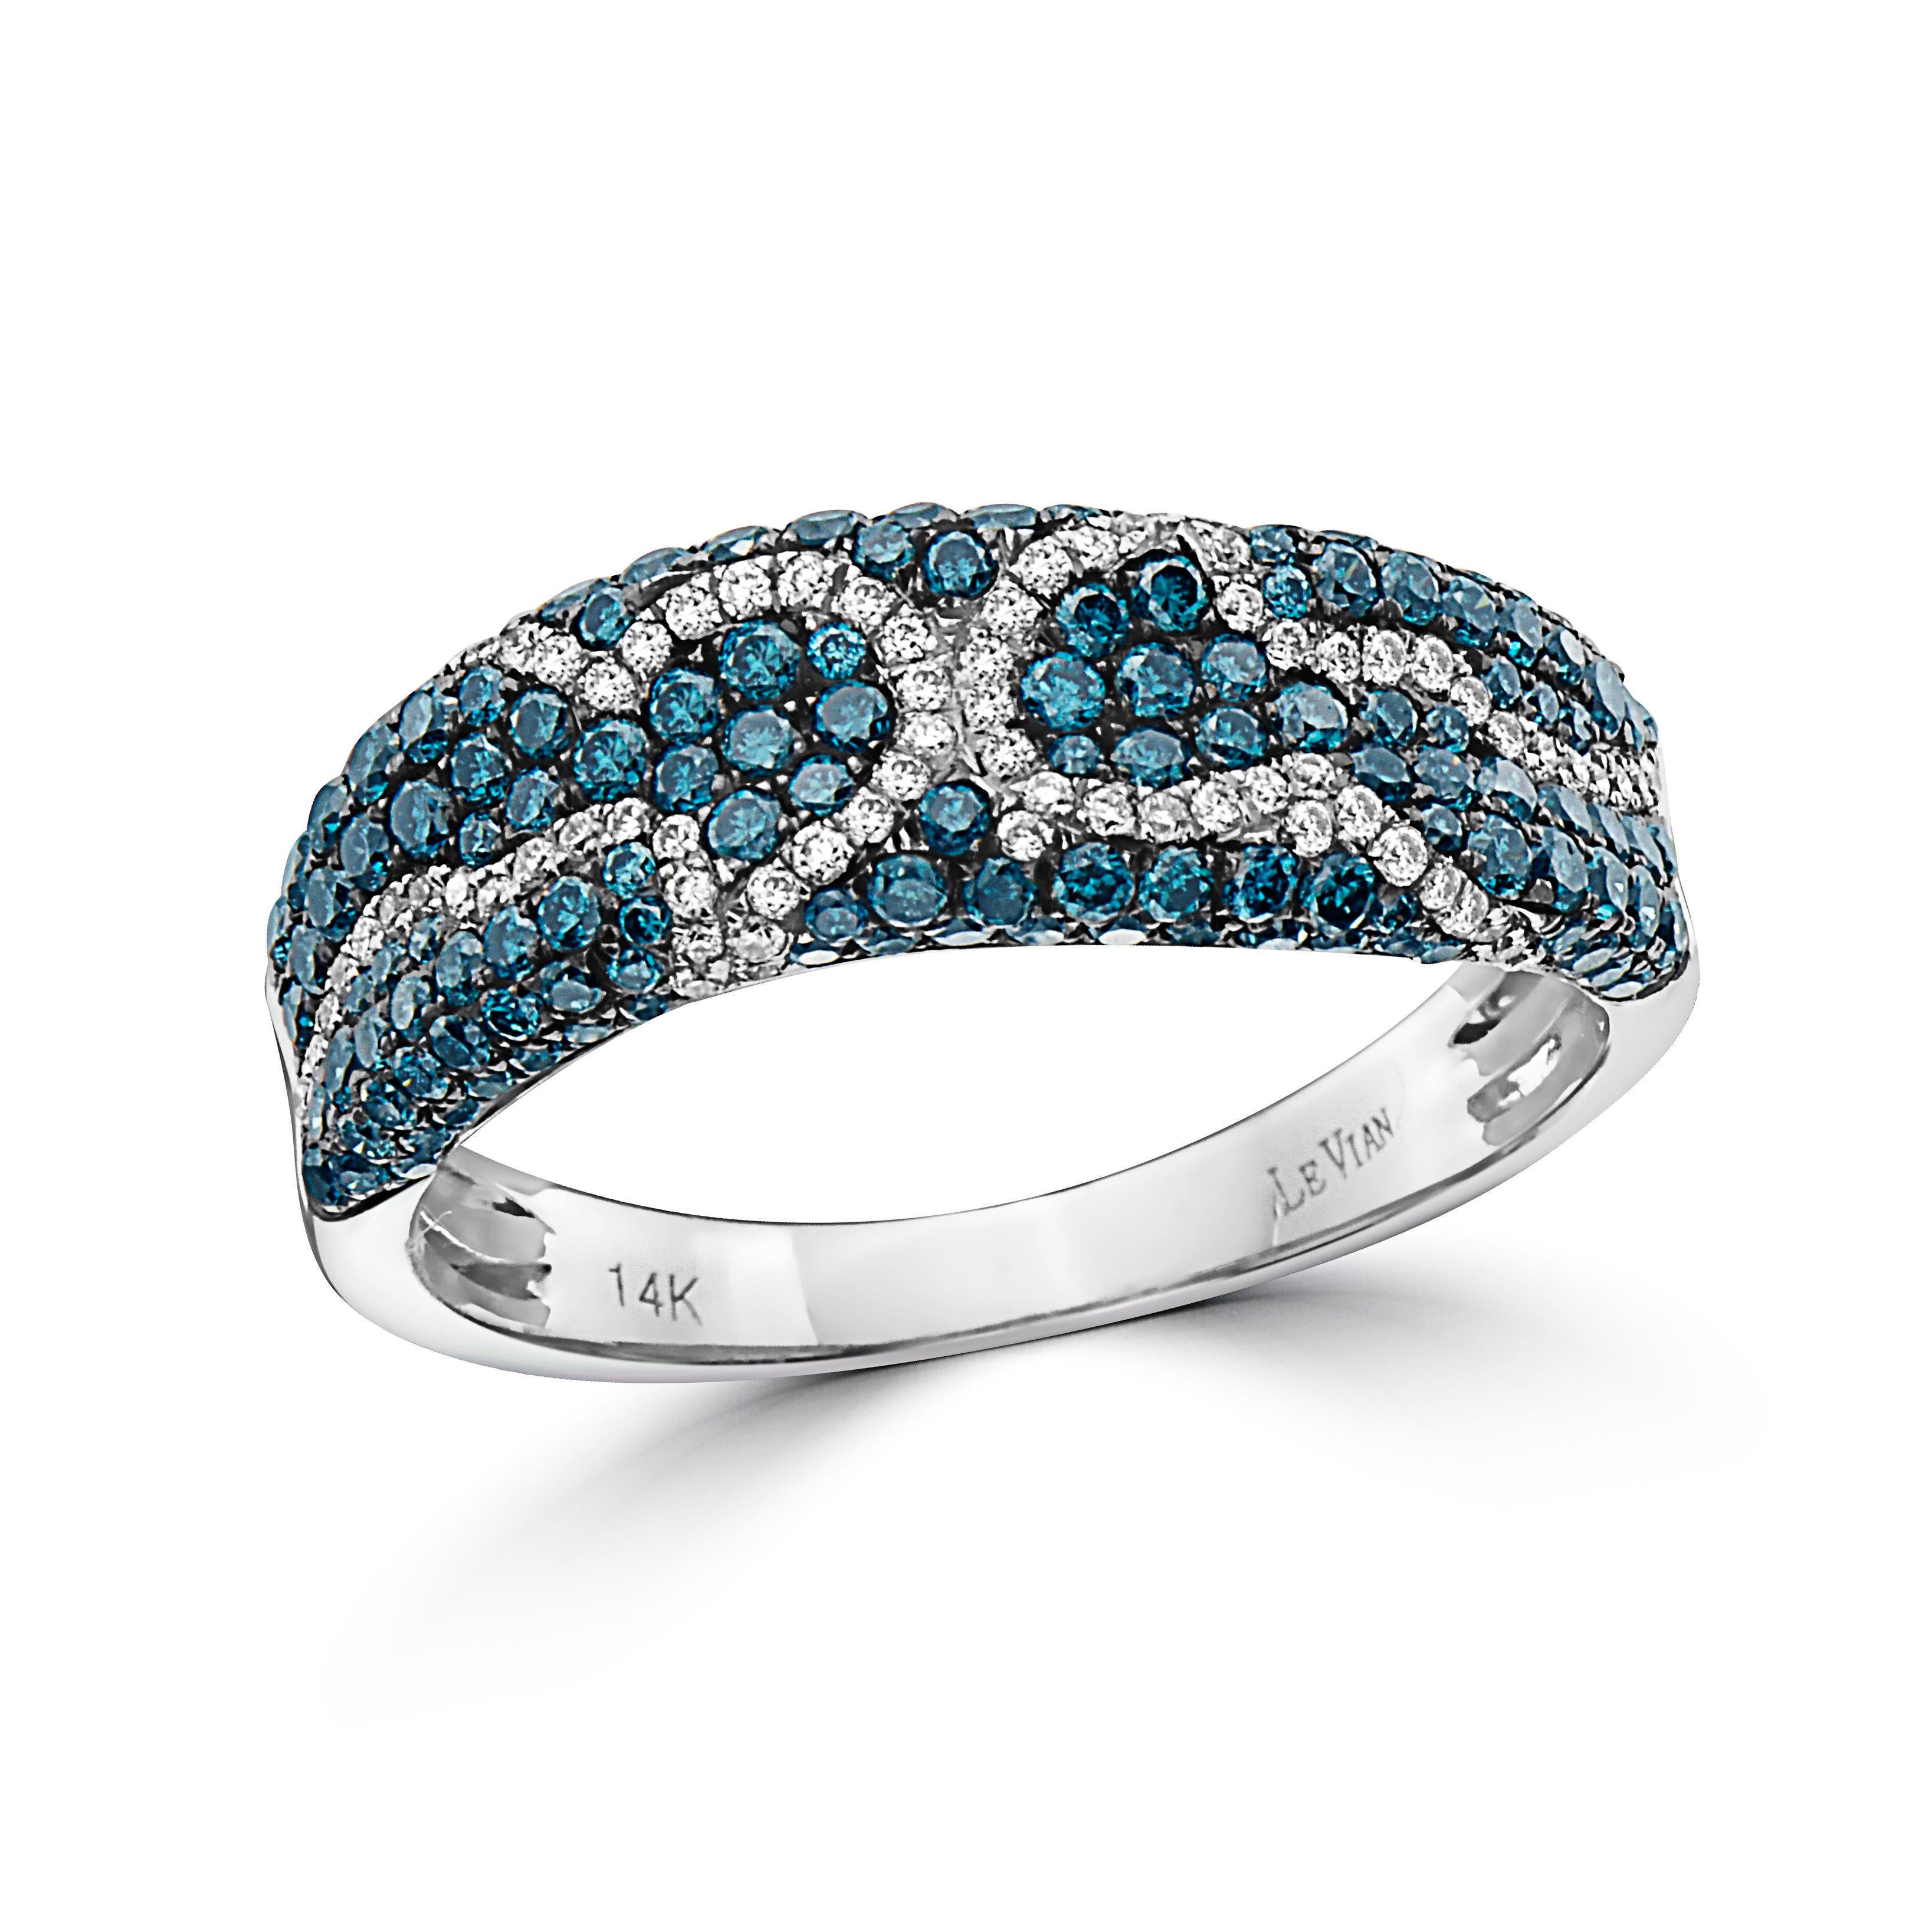 Großer Grand Sample Sale-Ring mit 7/8 Karat blauen und weißen natürlichen Diamanten in 14K Weißgold